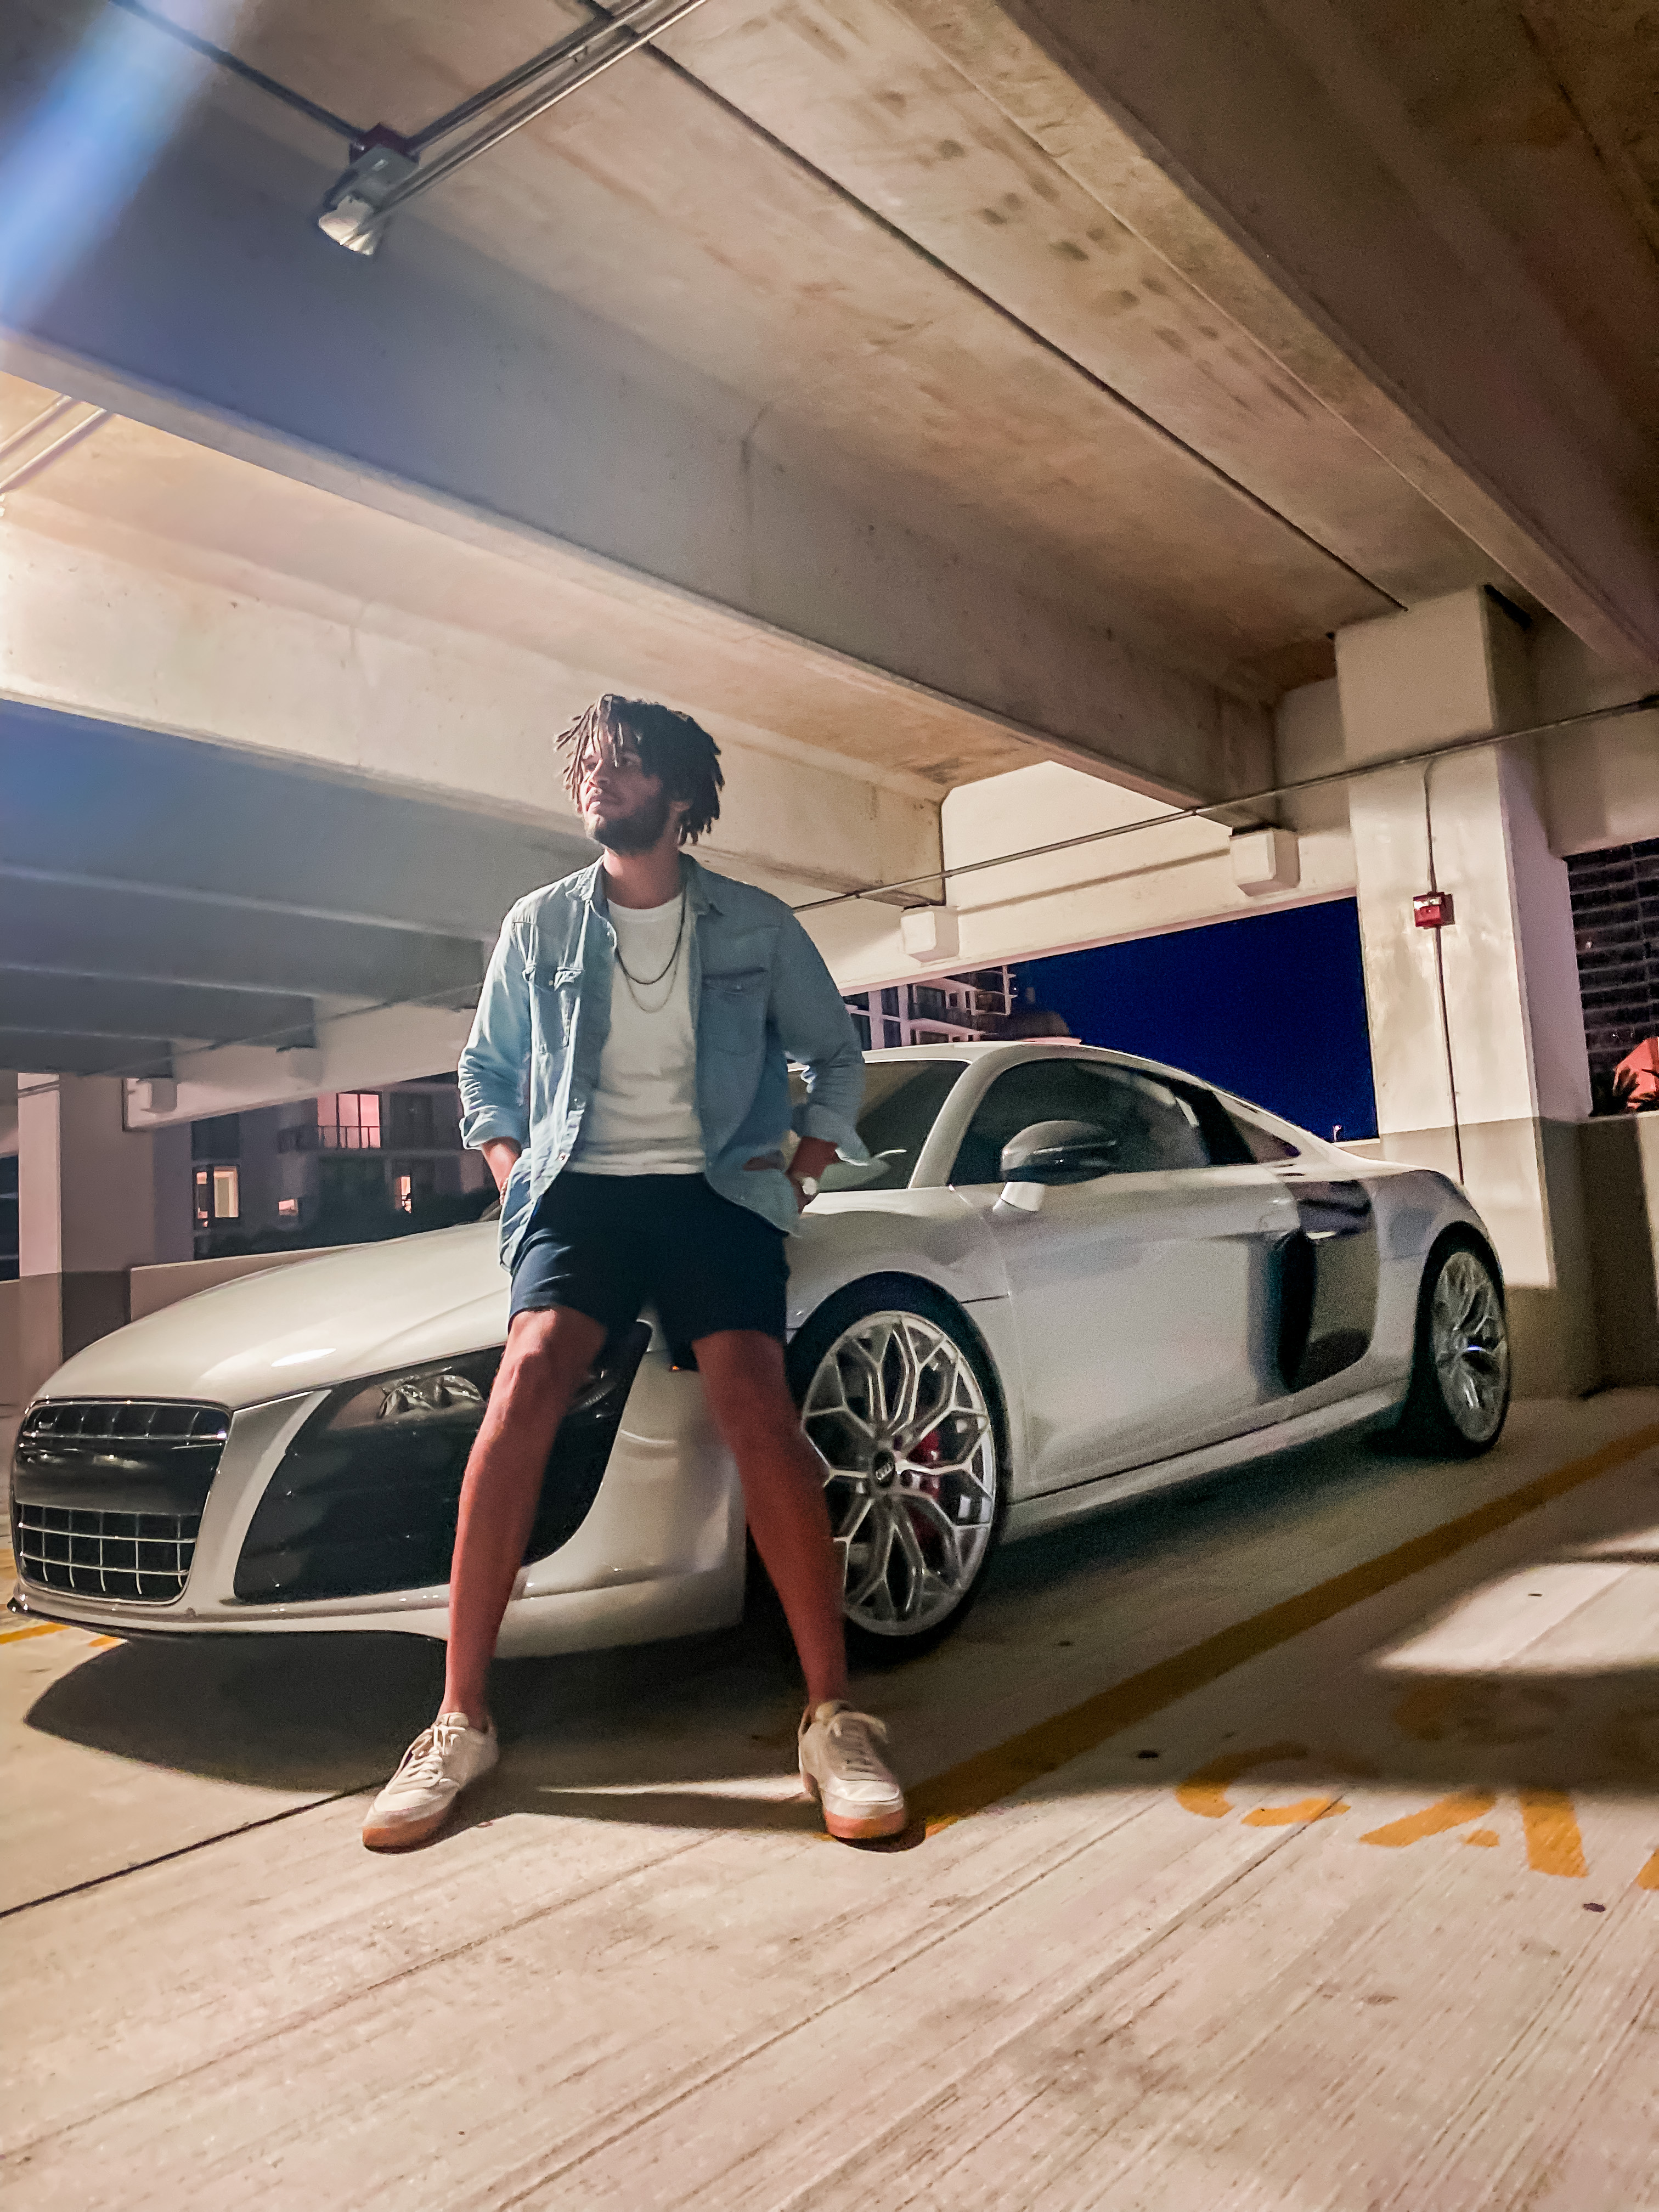 Alex with Audi R8 in a parking garage